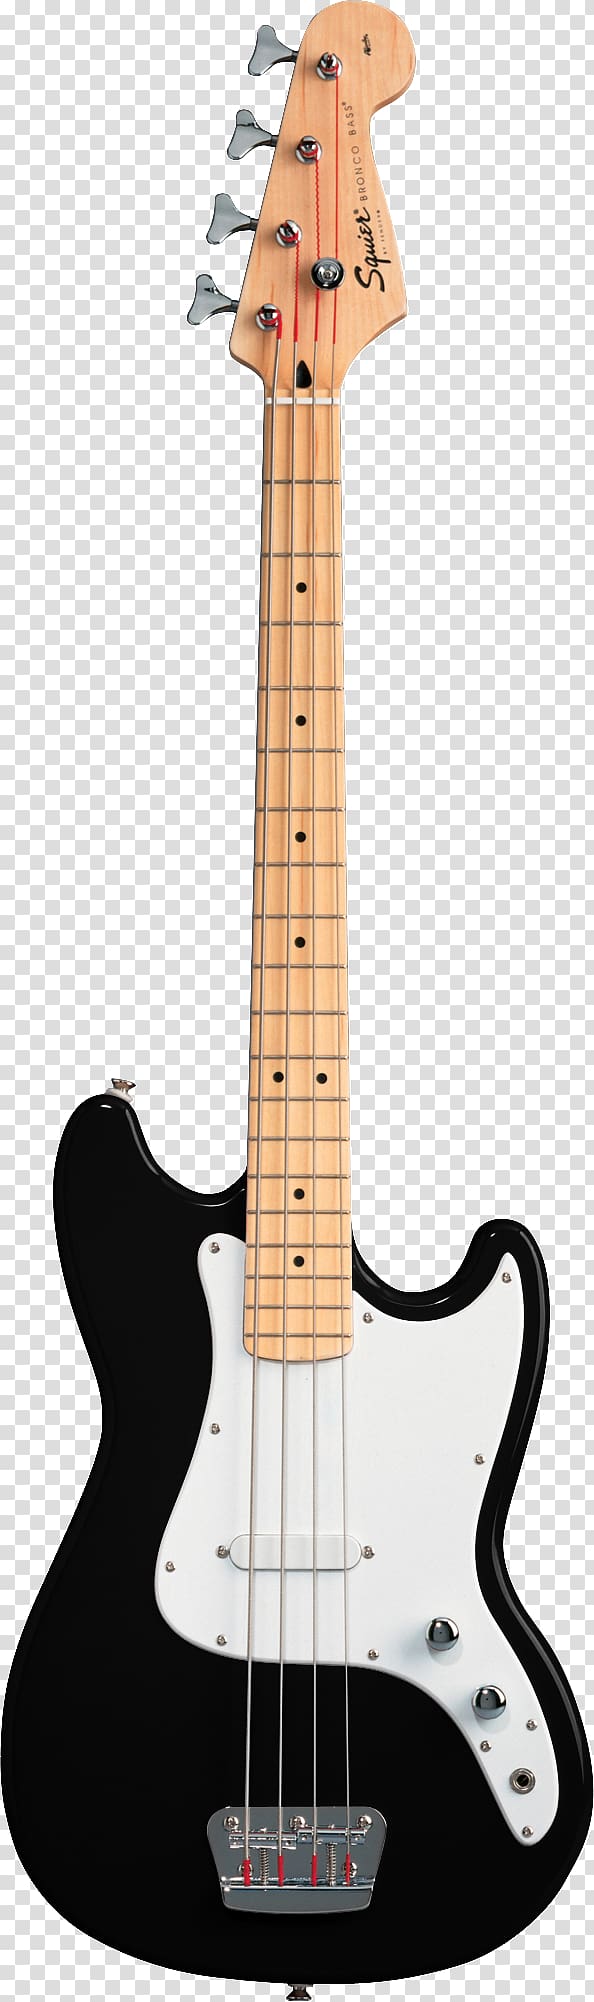 Fender Bronco Fender Mustang Bass Fender Jazz Bass V Fender Coronado Fender Jaguar Bass, Bass Guitar transparent background PNG clipart